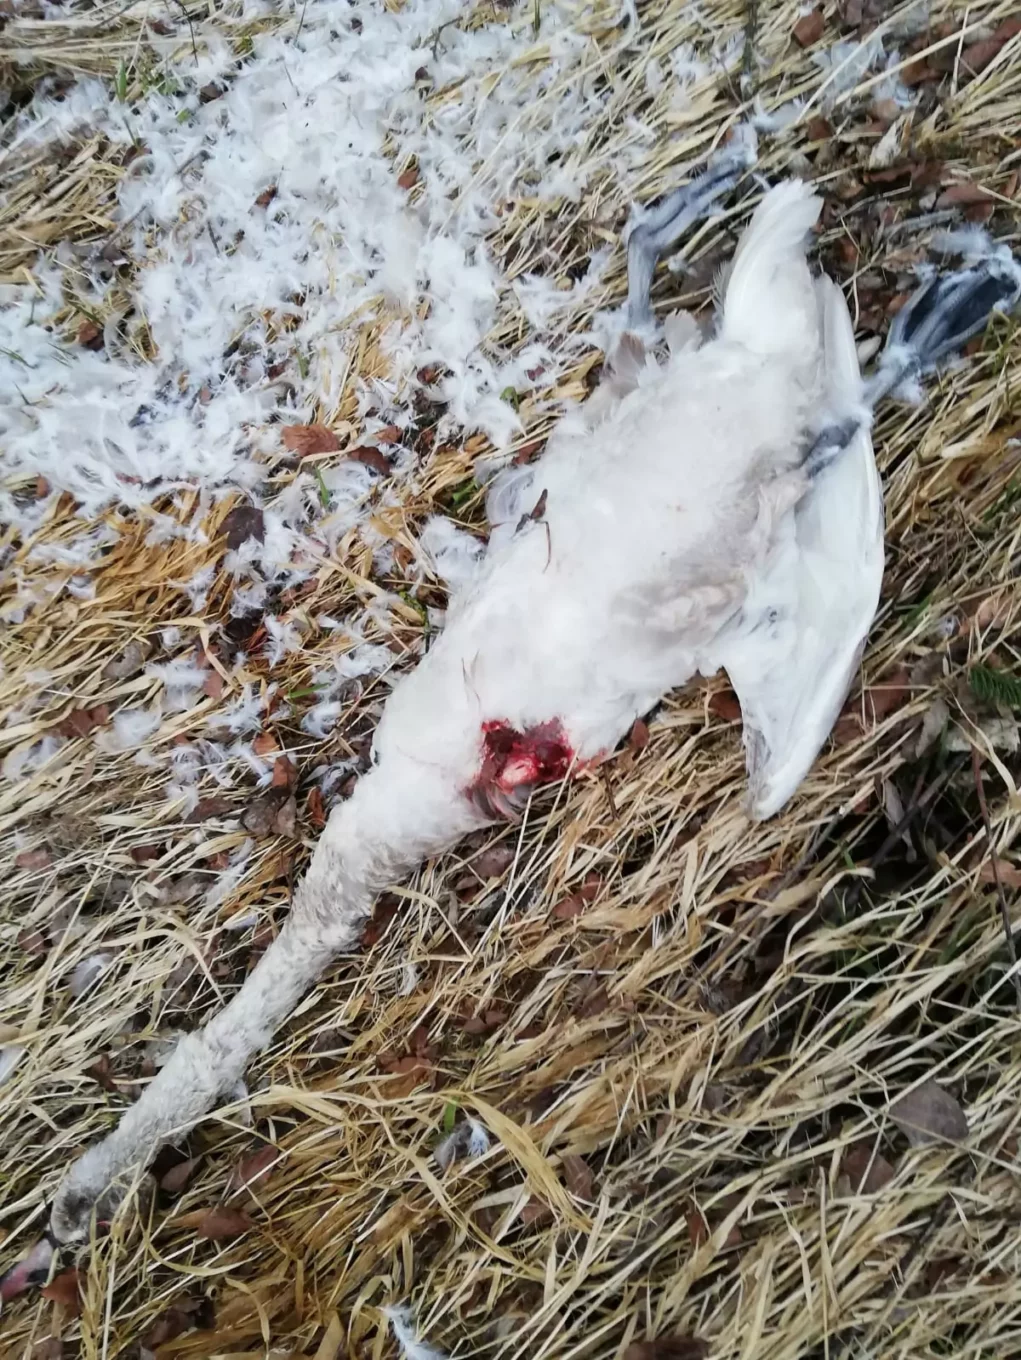 Bild auf 5min.at zeigt einen getöteten Schwan